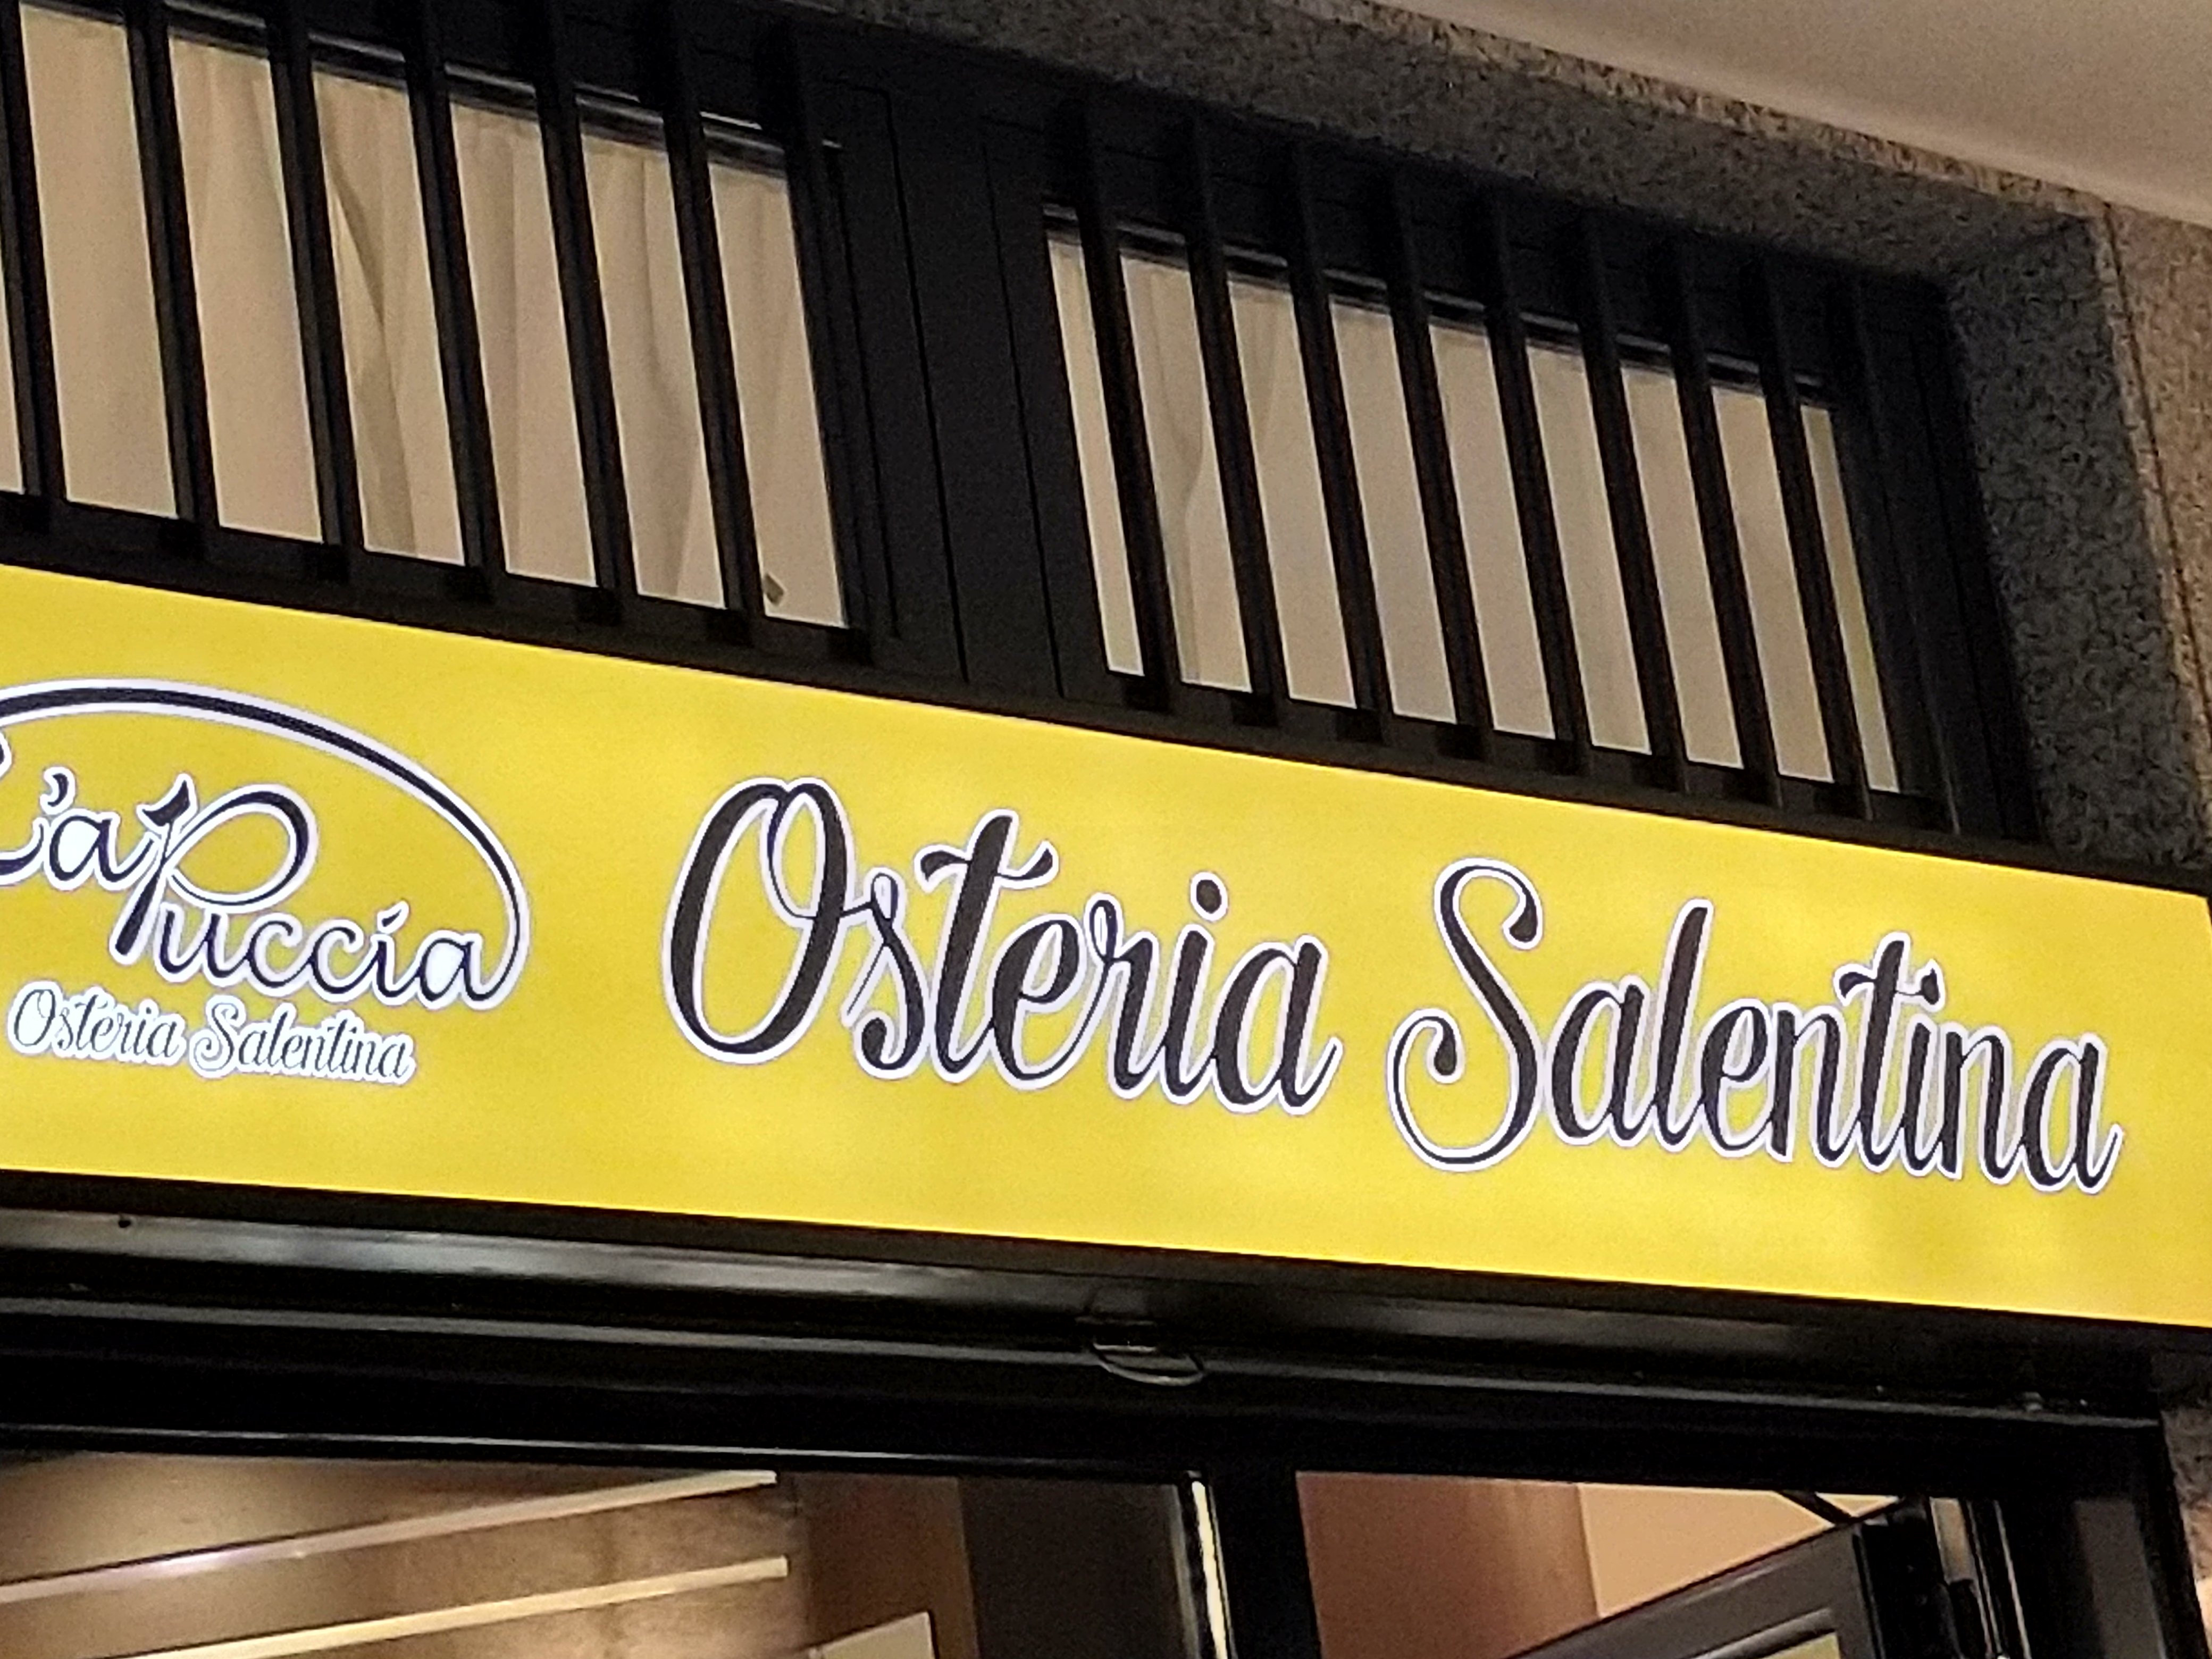 La Puccia Osteria Salentina, Trezzano sul Naviglio